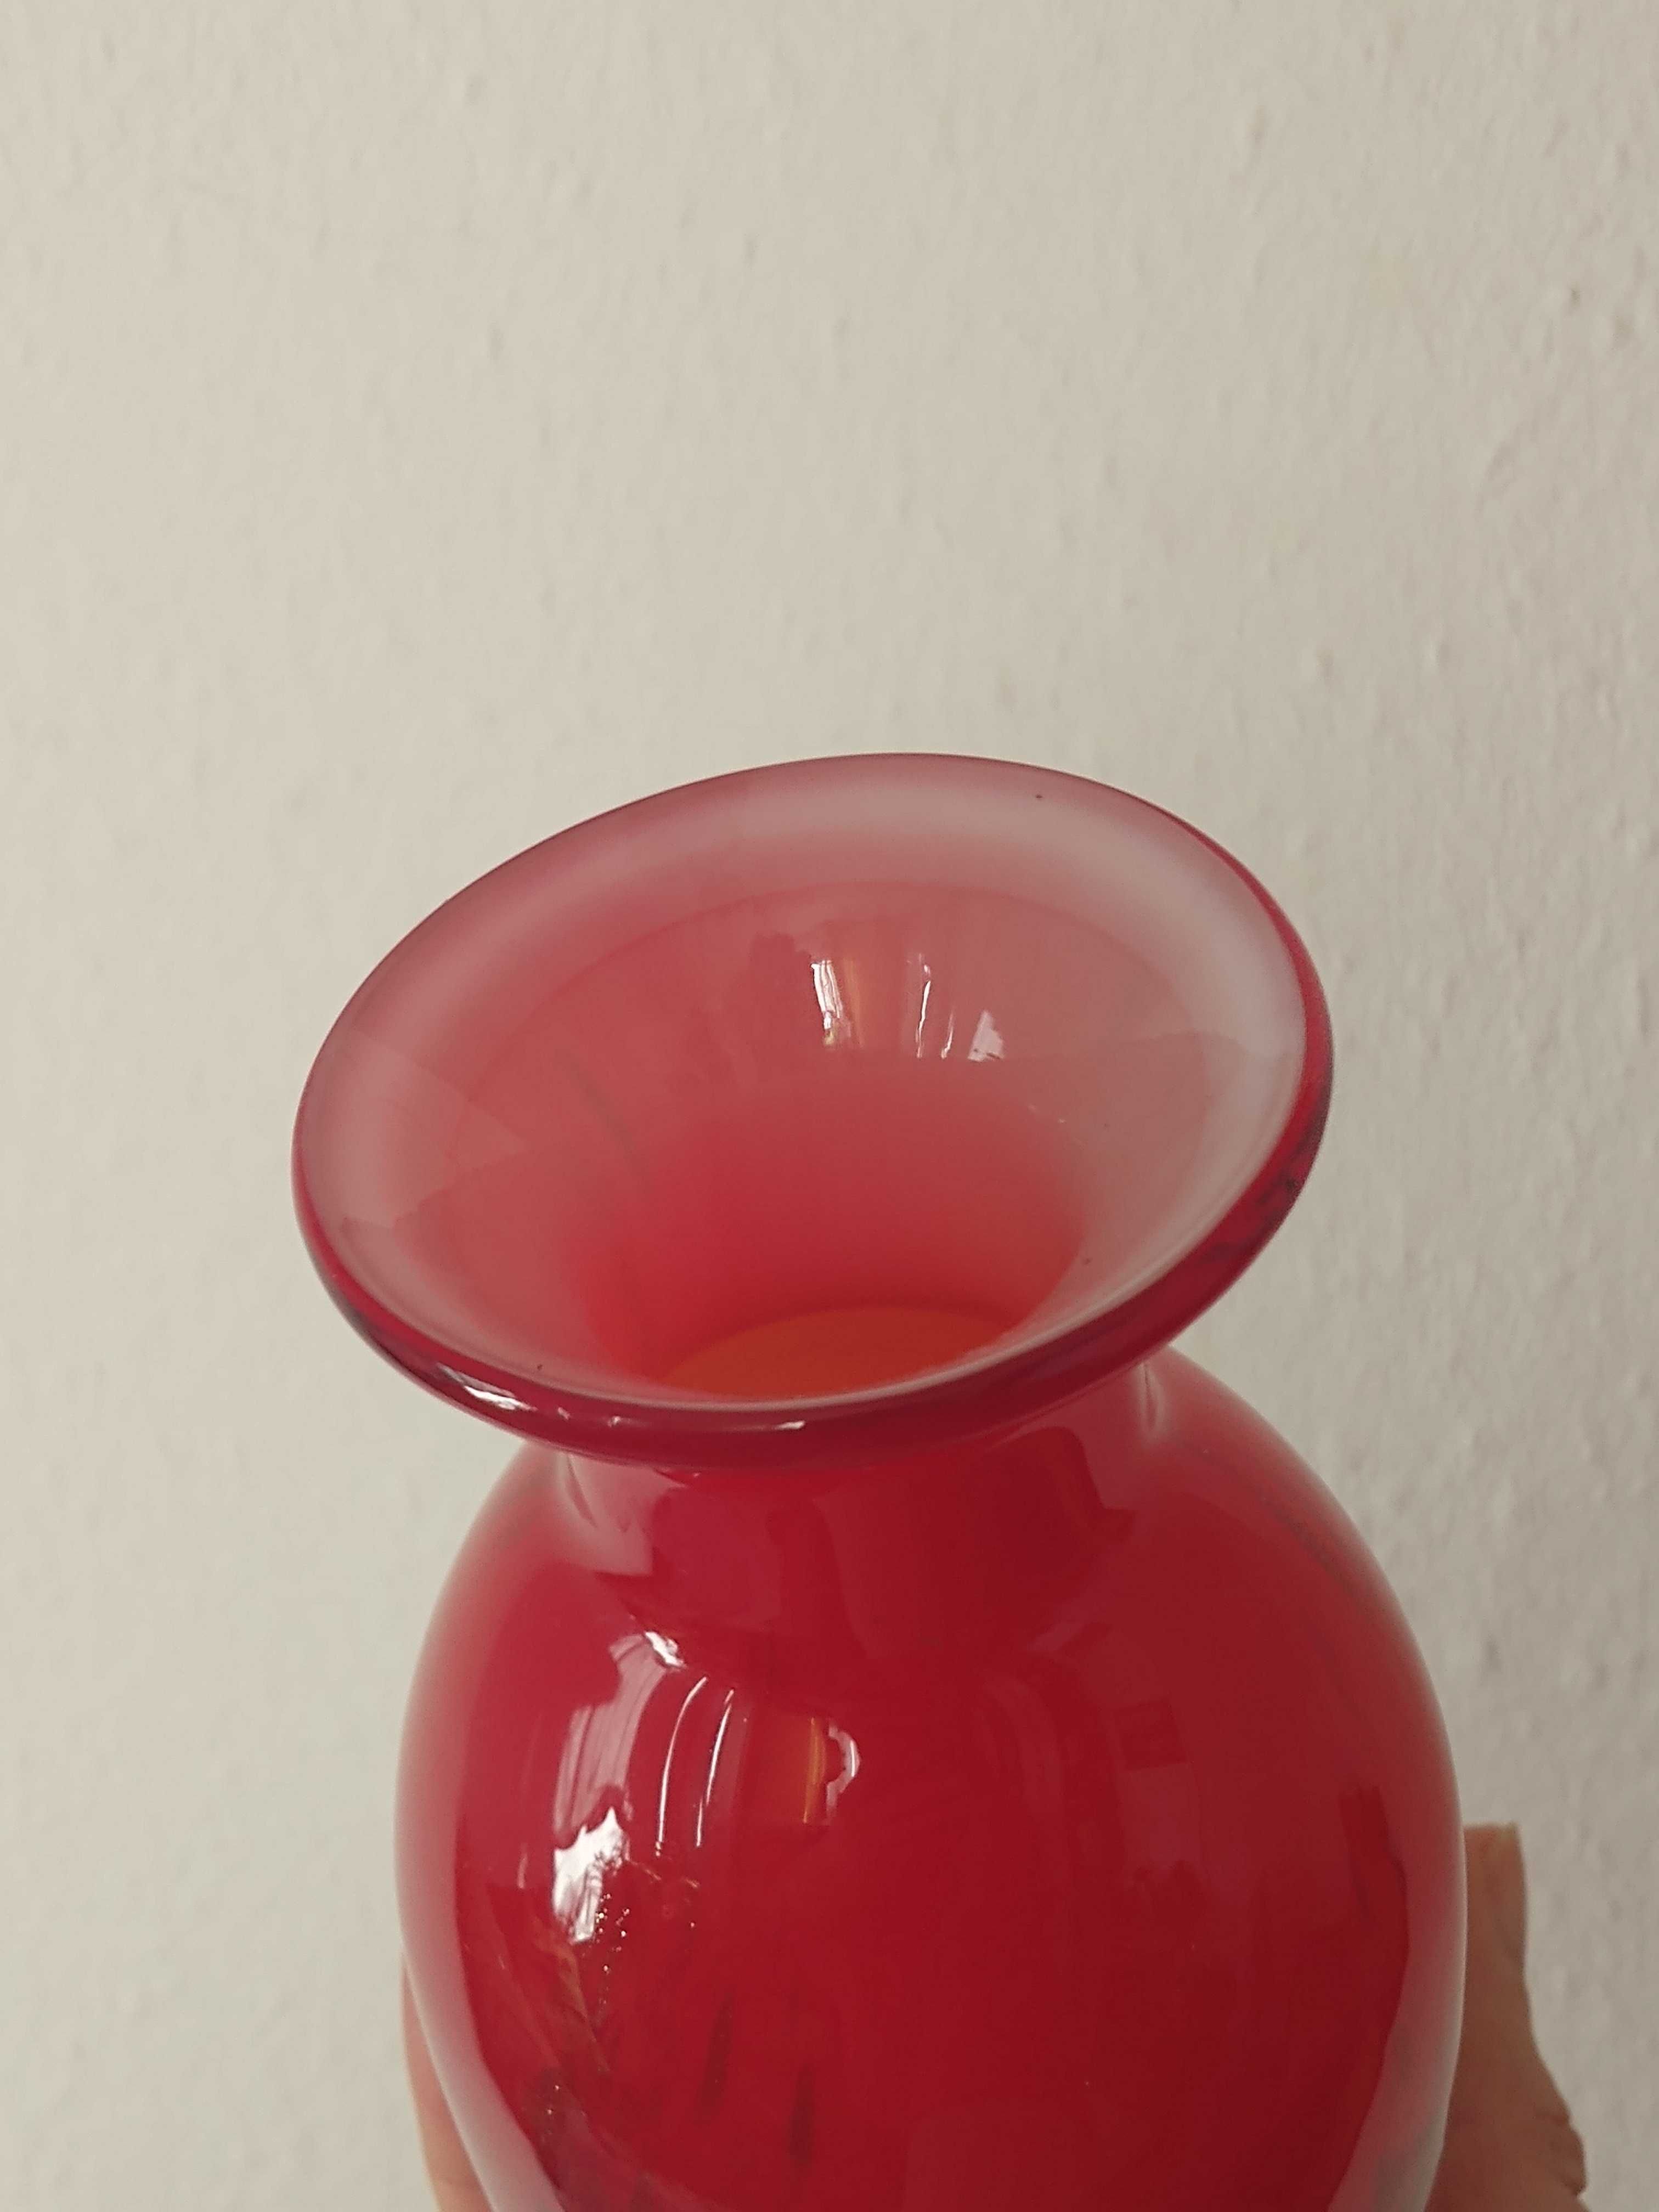 czerwony, szklany wazon Murano ze złotym piaskiem